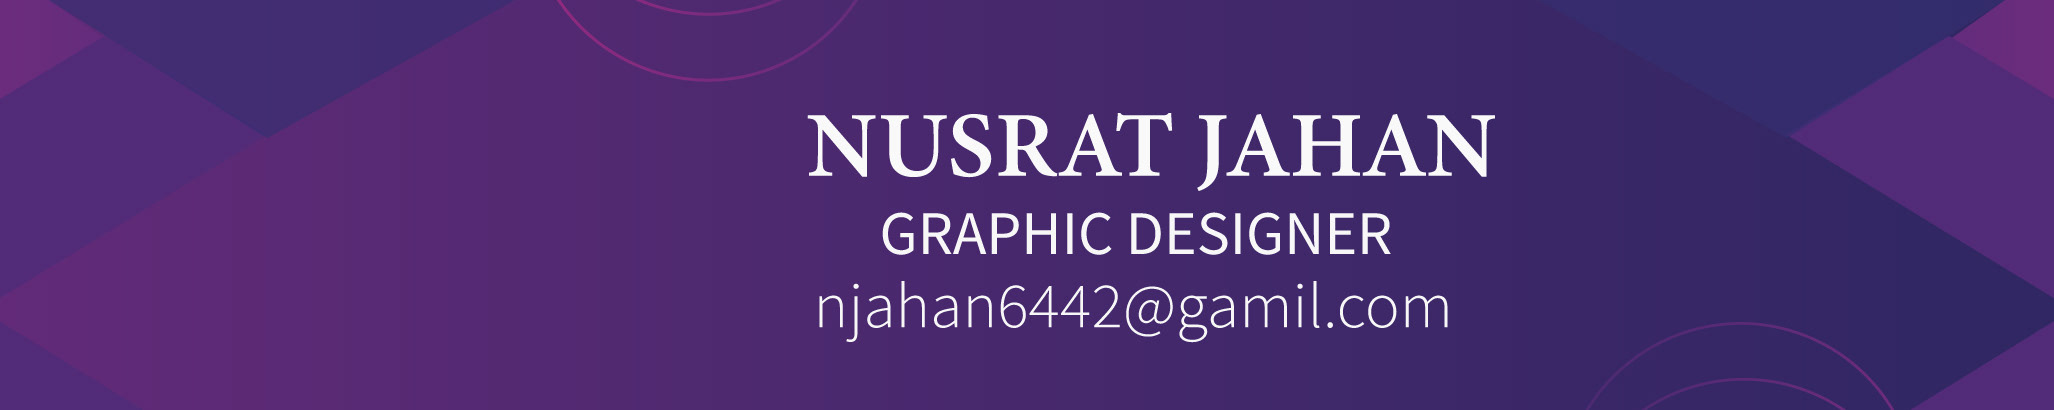 Баннер профиля Nusrat Jahan